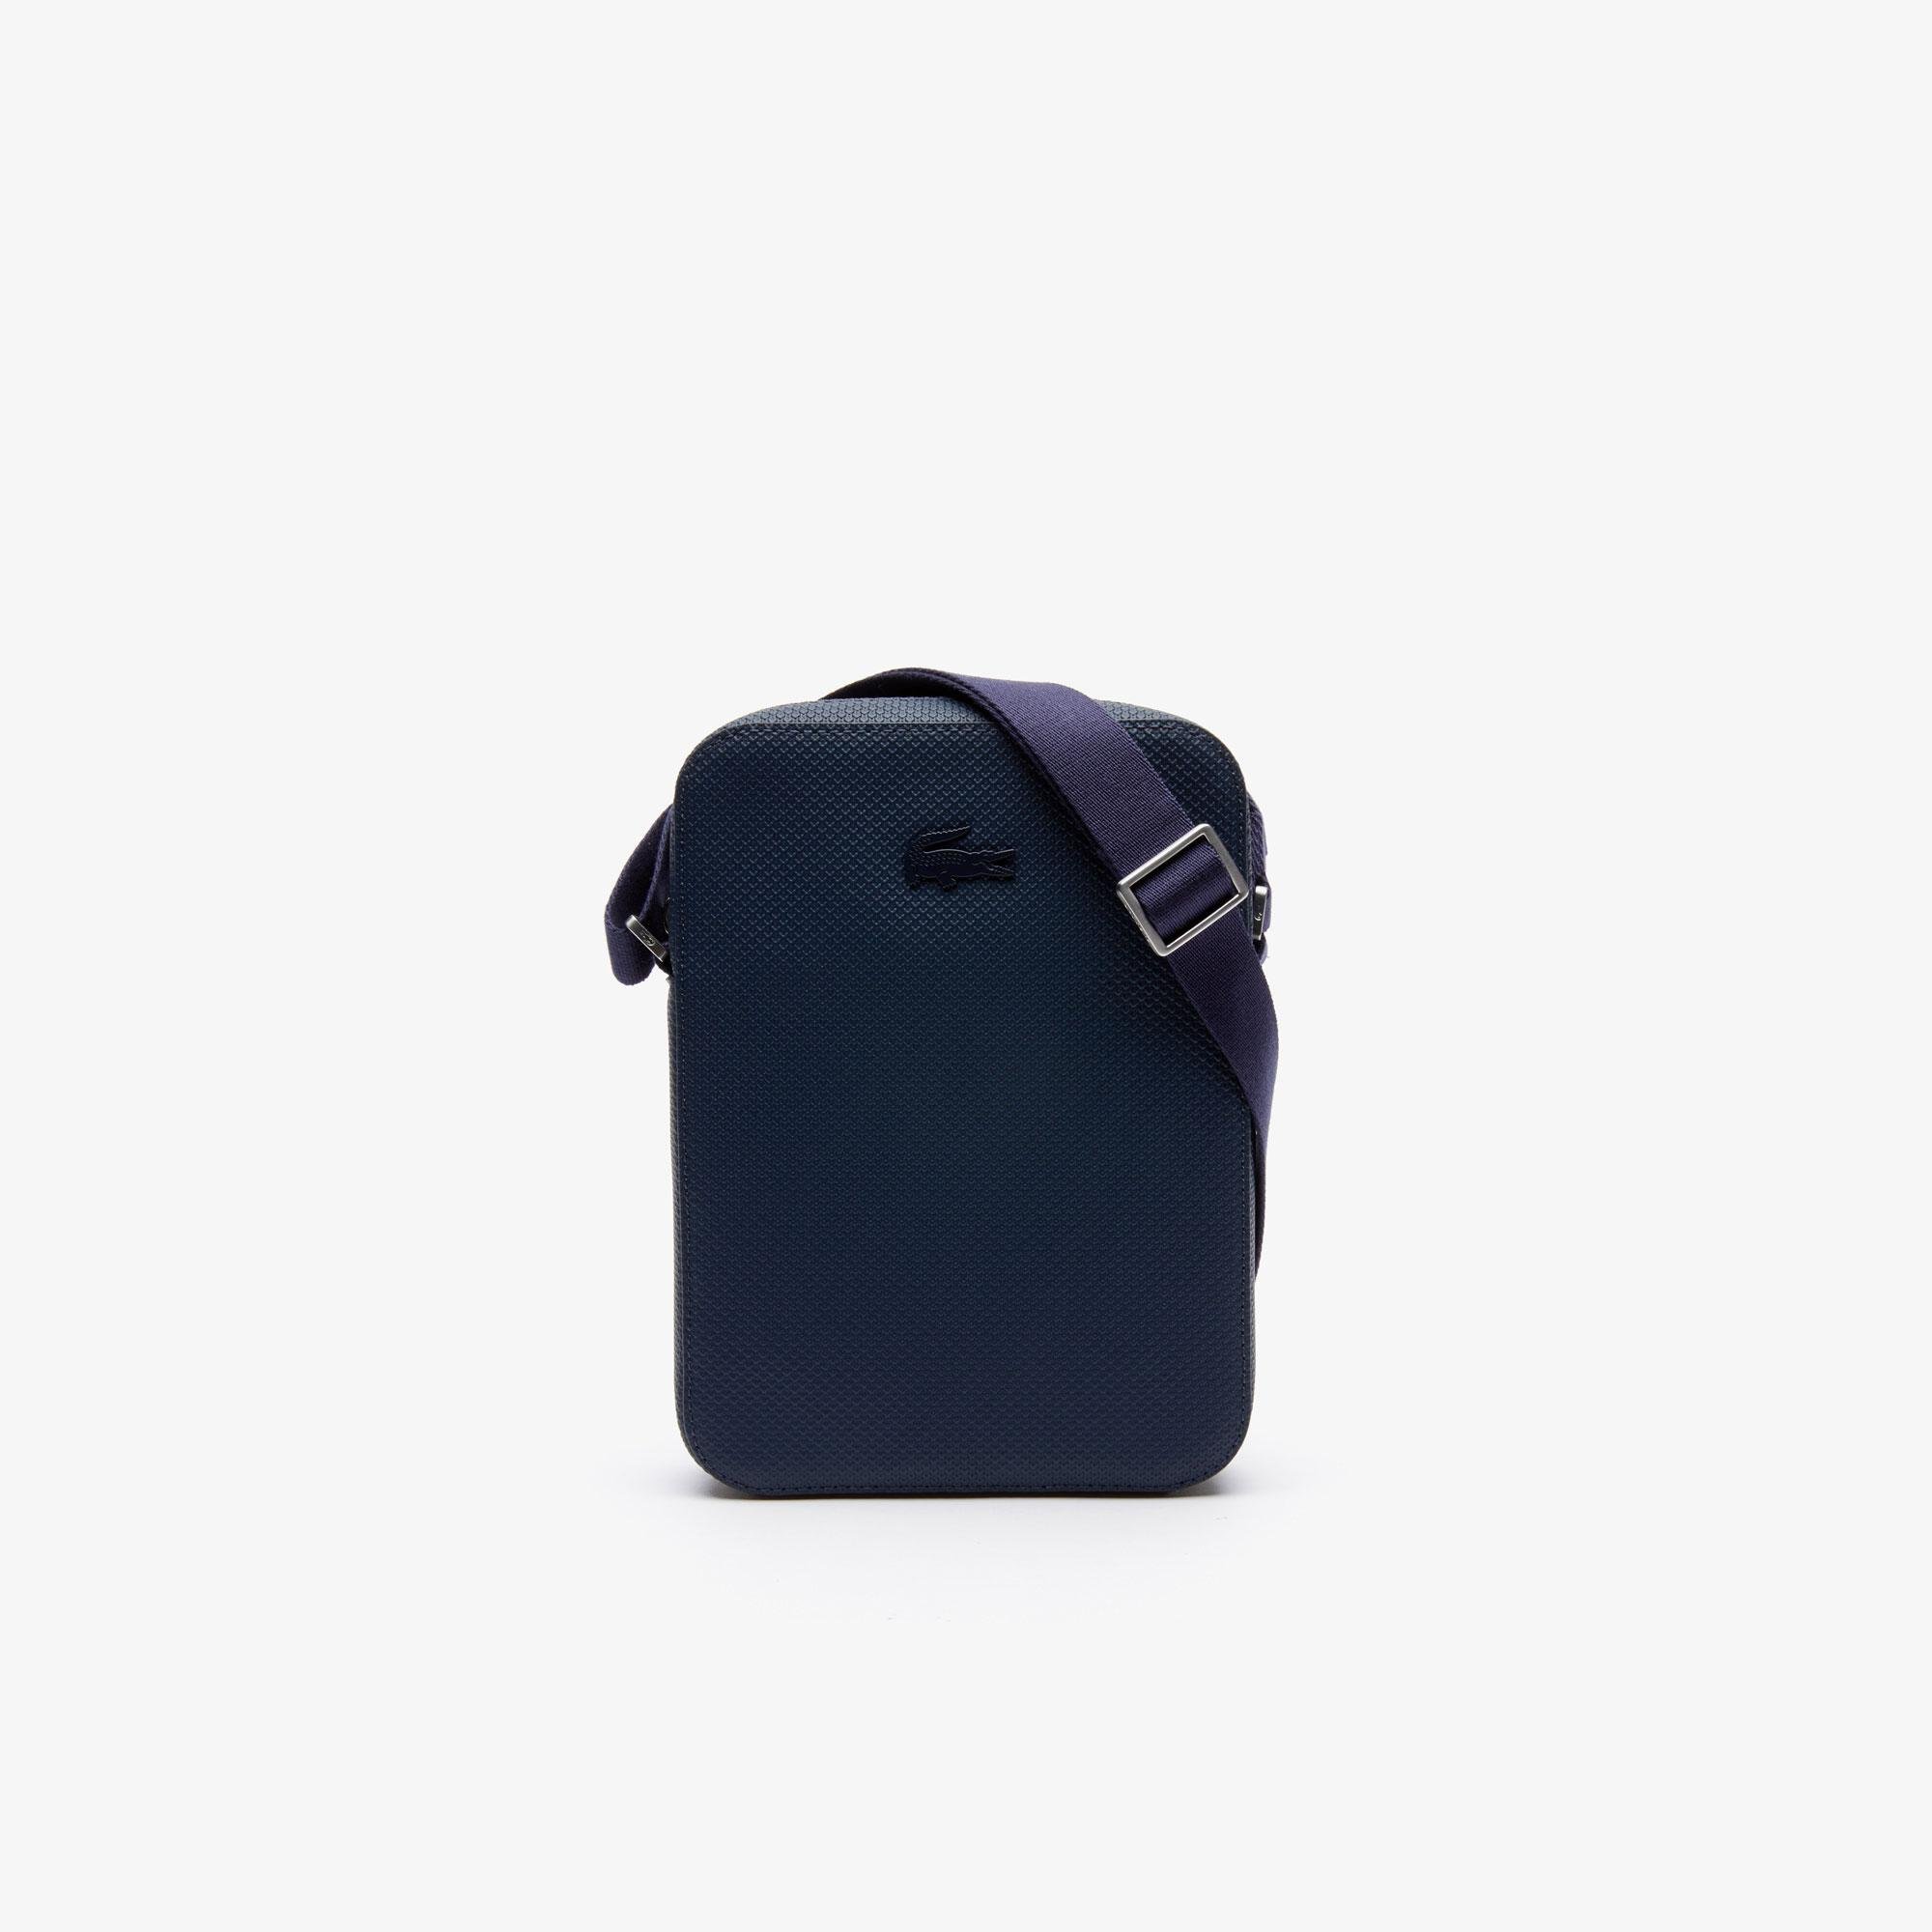 Lacoste Men's Chantaco Soft Leather Vertical Zip Bag